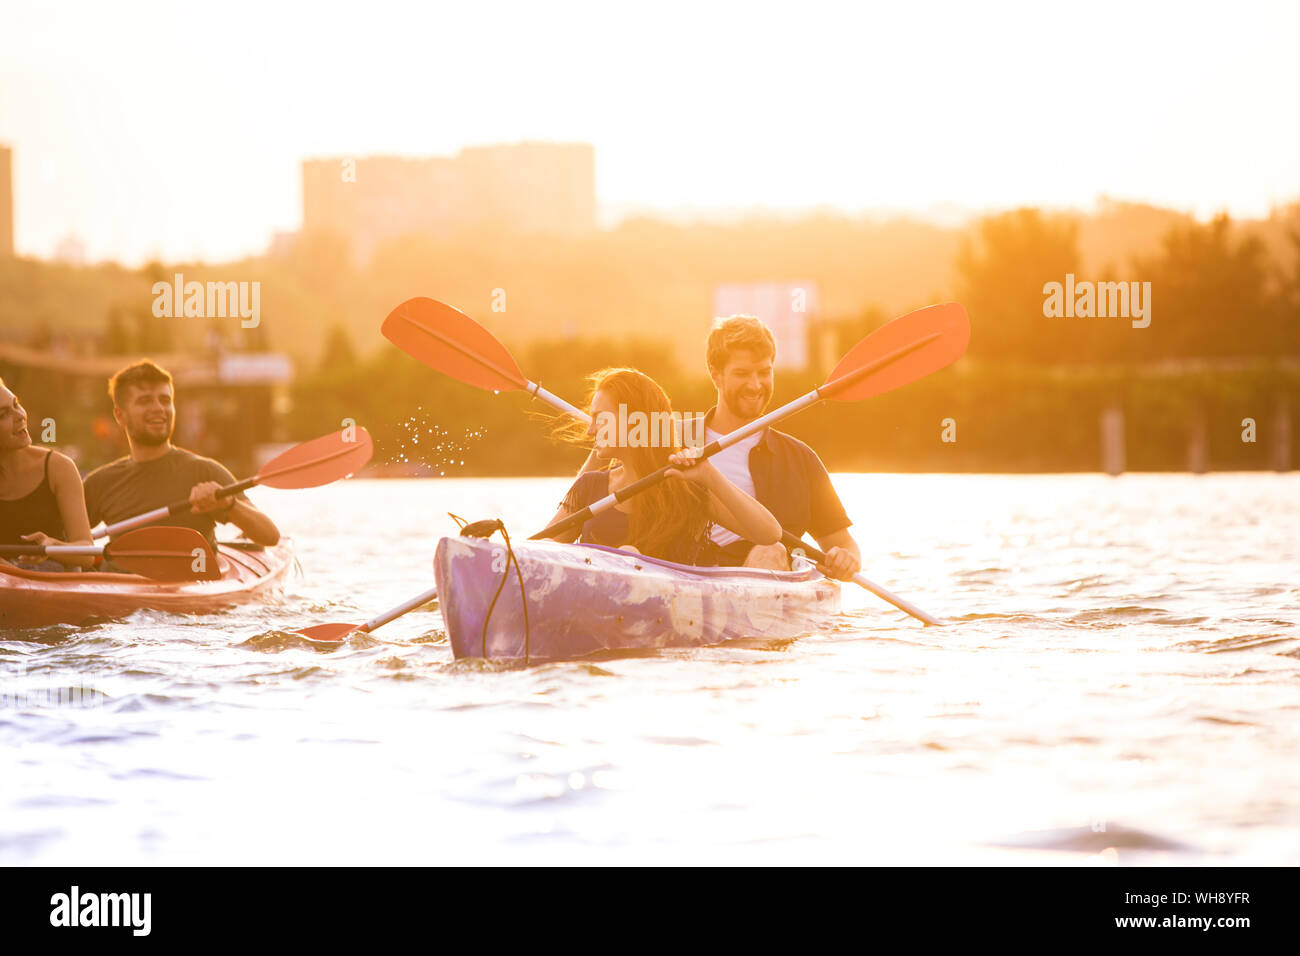 Glückliche Junge kaukasier Gruppe von Freunden Kajakfahren auf dem Fluss mit Sonnenuntergang im Hintergrund. Spaß in der Freizeit. Gerne männliche und weibliche Modell laughting auf dem Kajak. Sport, Beziehungen Konzept. Stockfoto